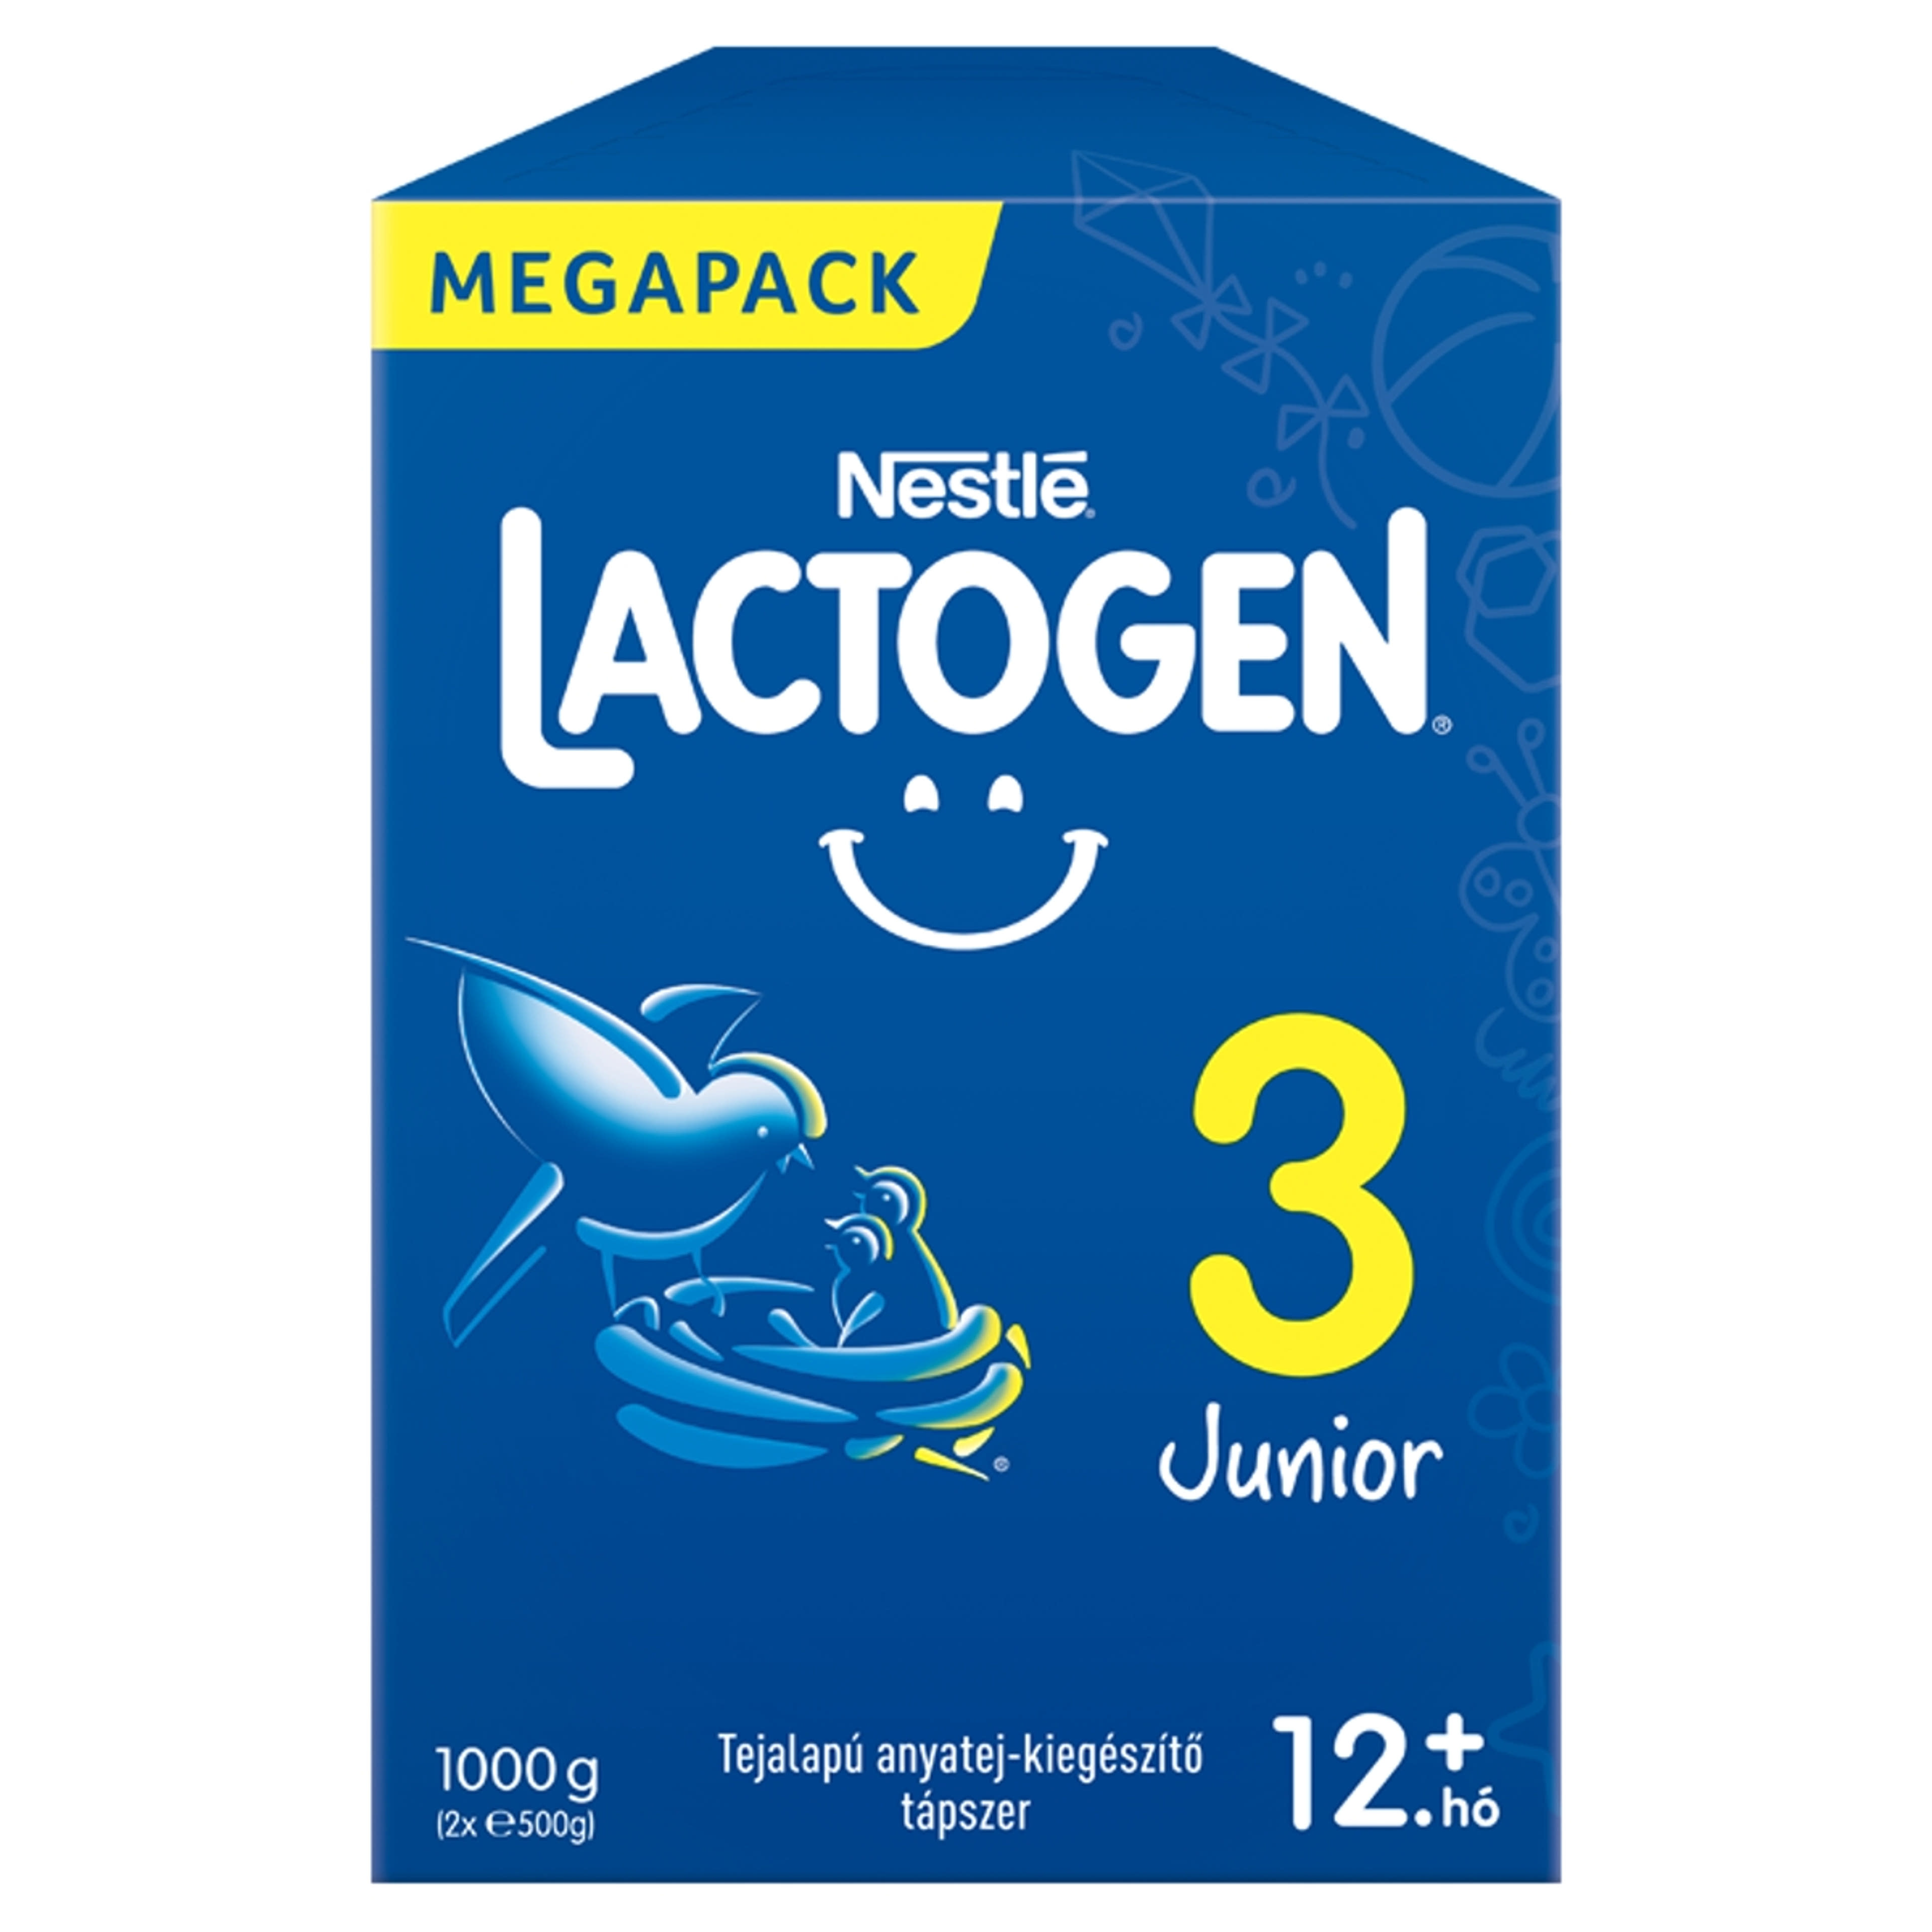 Nestlé Lactogen 3 Junior tápszer 12 hónapos kortól - 1000 g